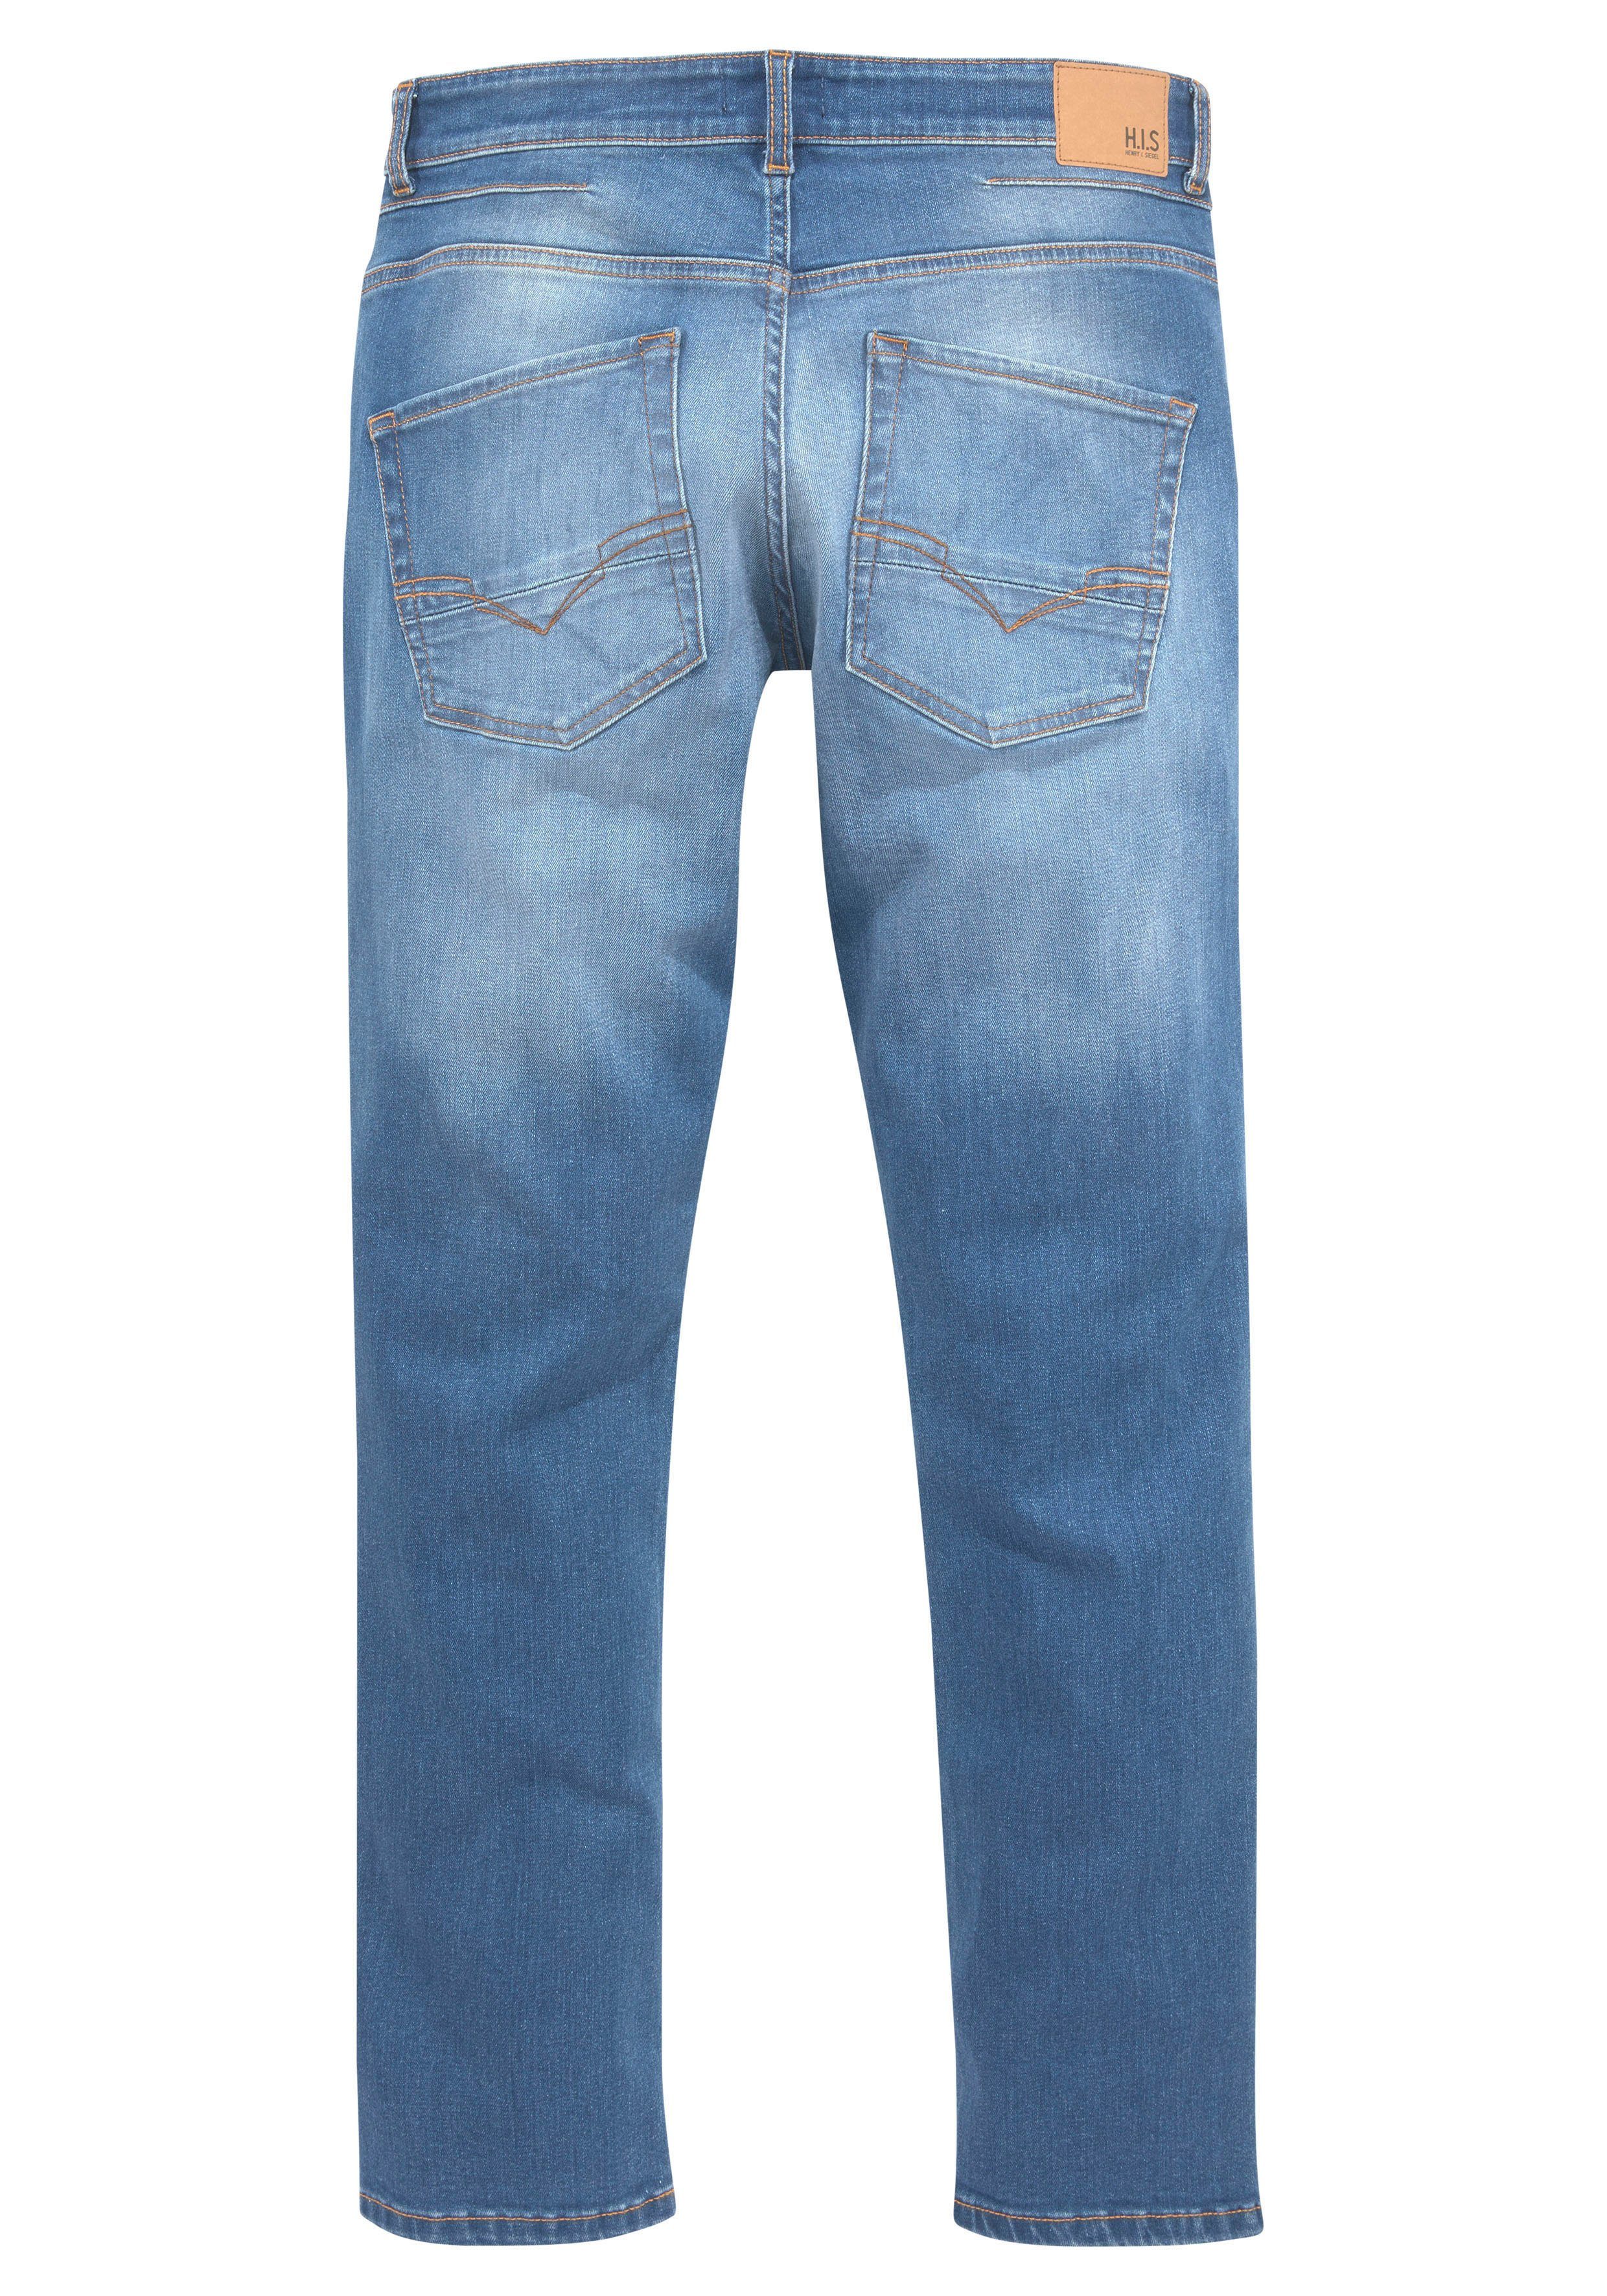 Wash Ökologische, blue H.I.S wassersparende Straight-Jeans DALE Produktion Ozon durch